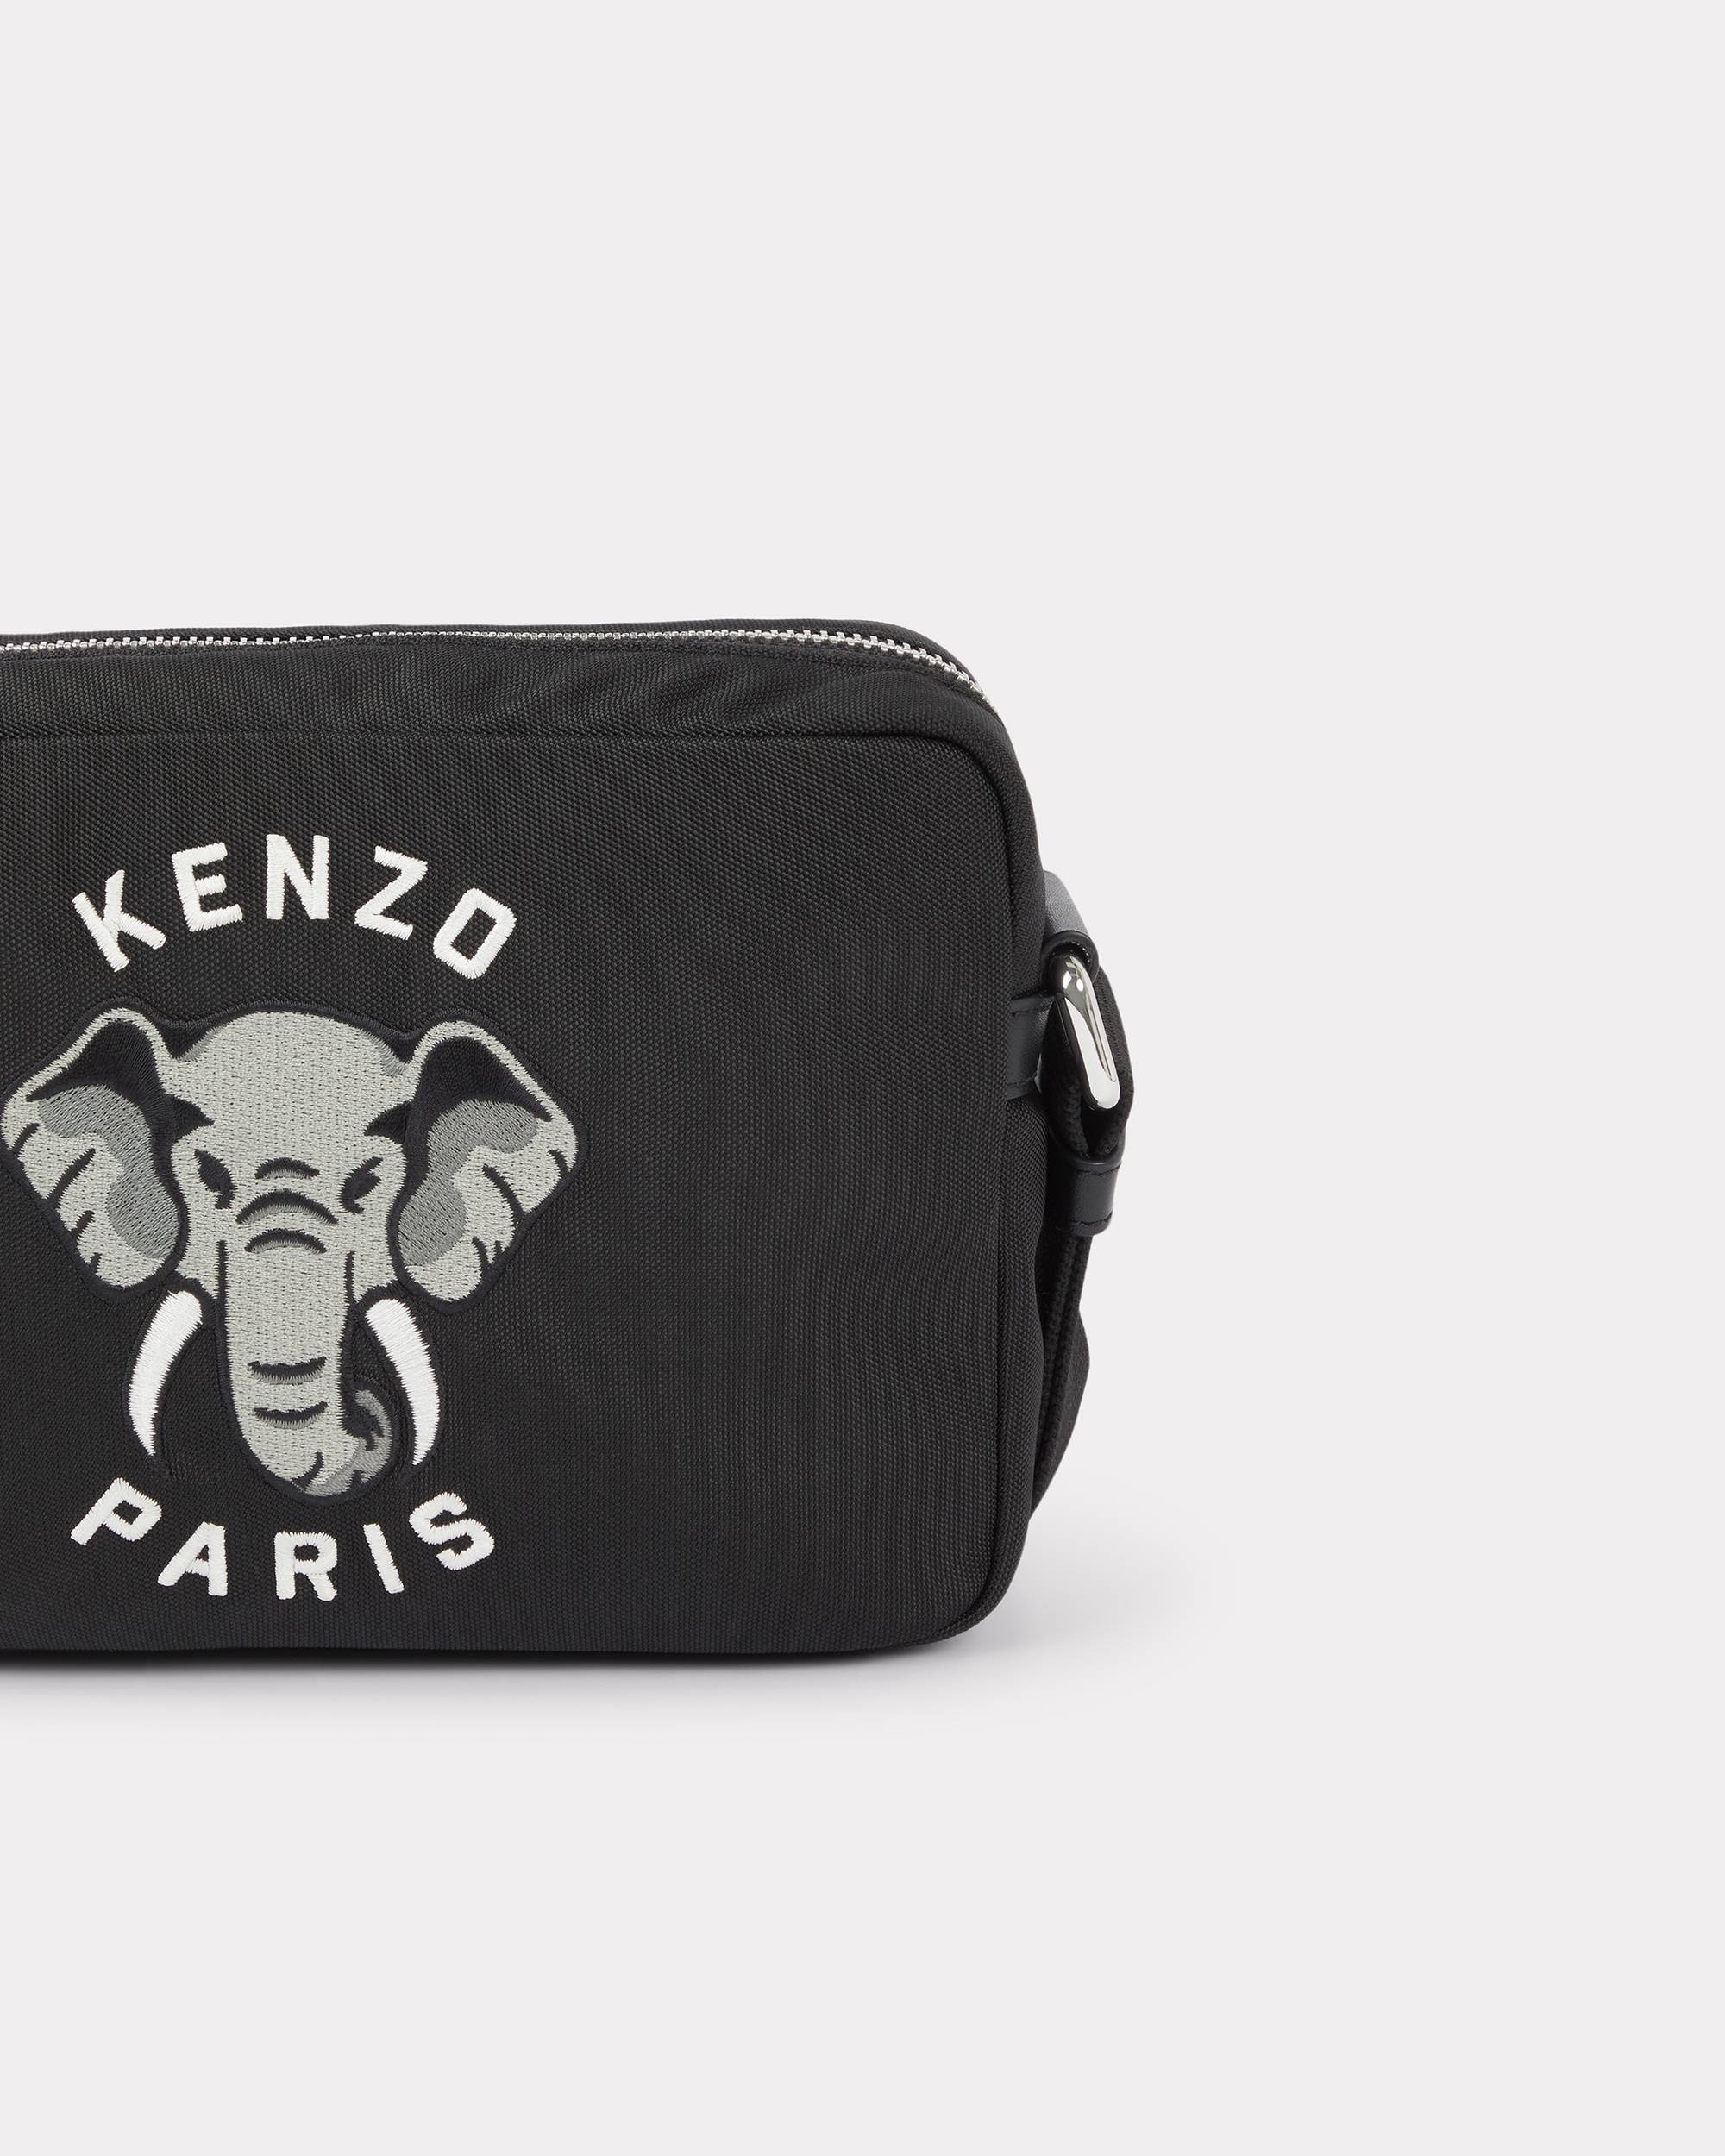 'KENZO Varsity' handbag - 3